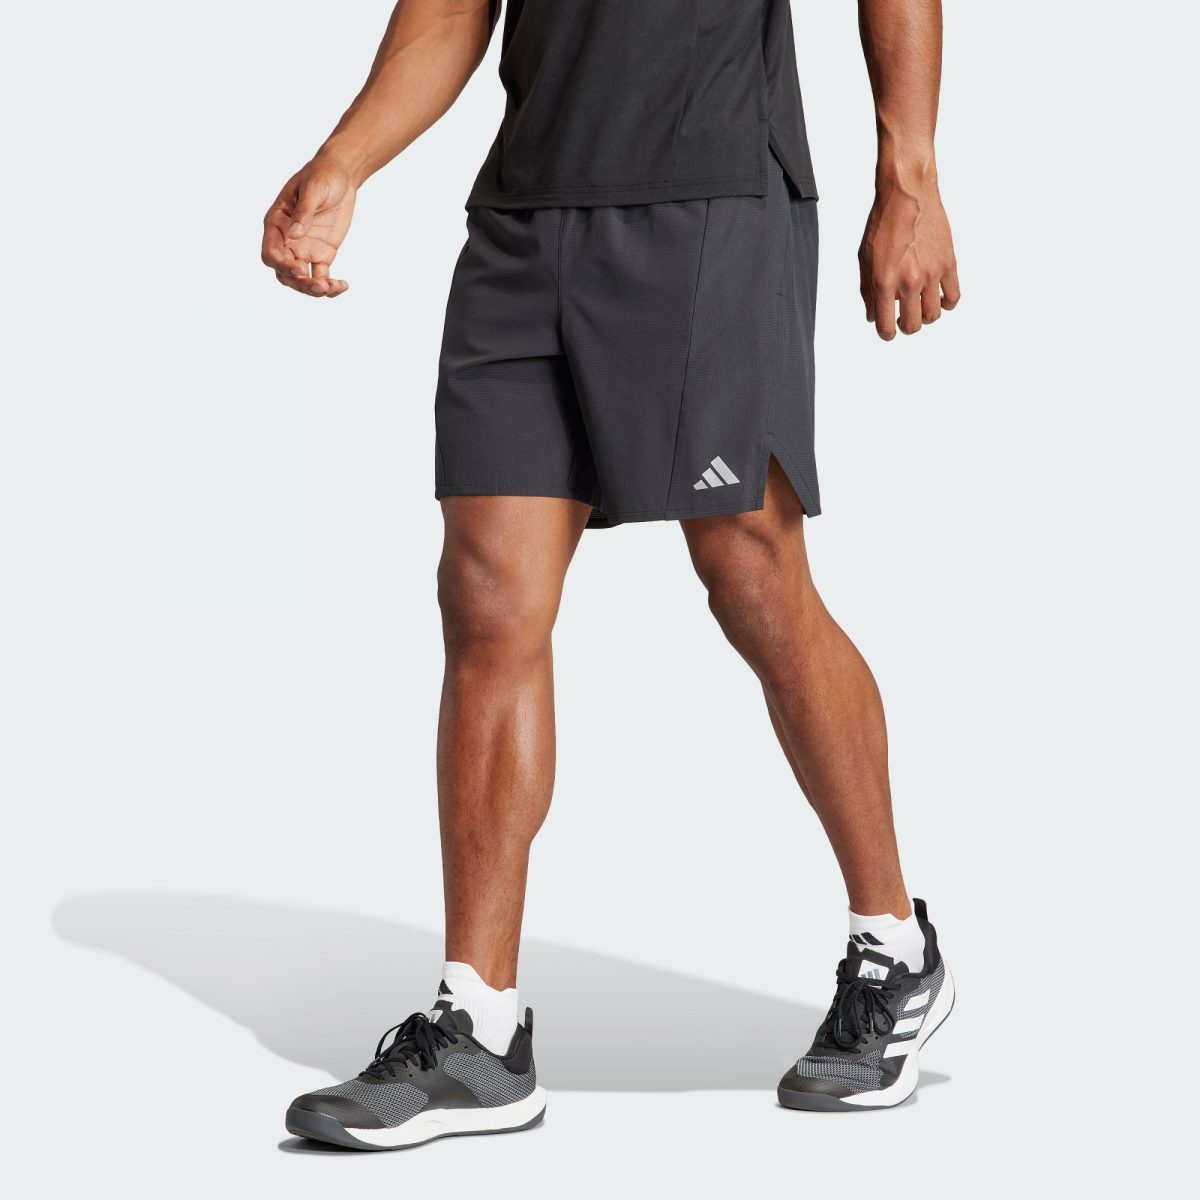 Мужская футболка adidas TRAINING HIIT WORKOUT HEAT.RDY черная фото